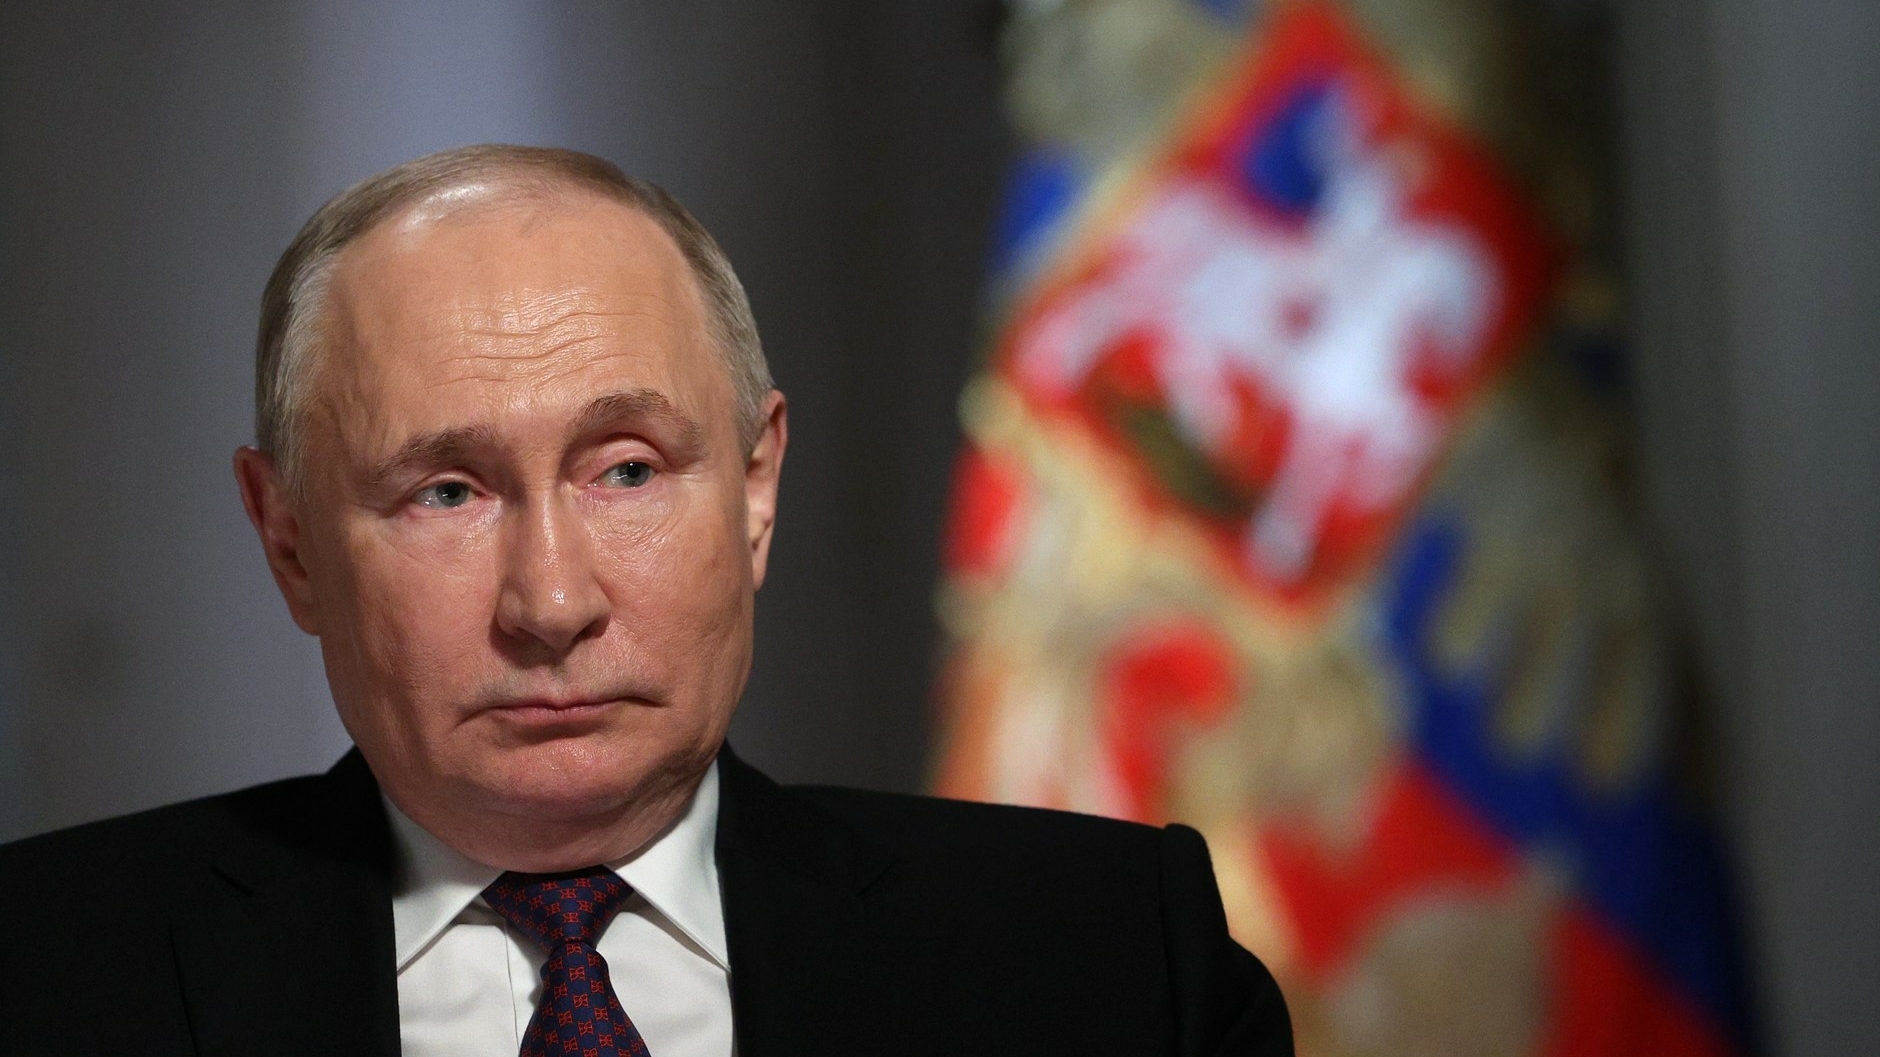 Путин поручил кабмину разработать меры поддержки российских аграриев